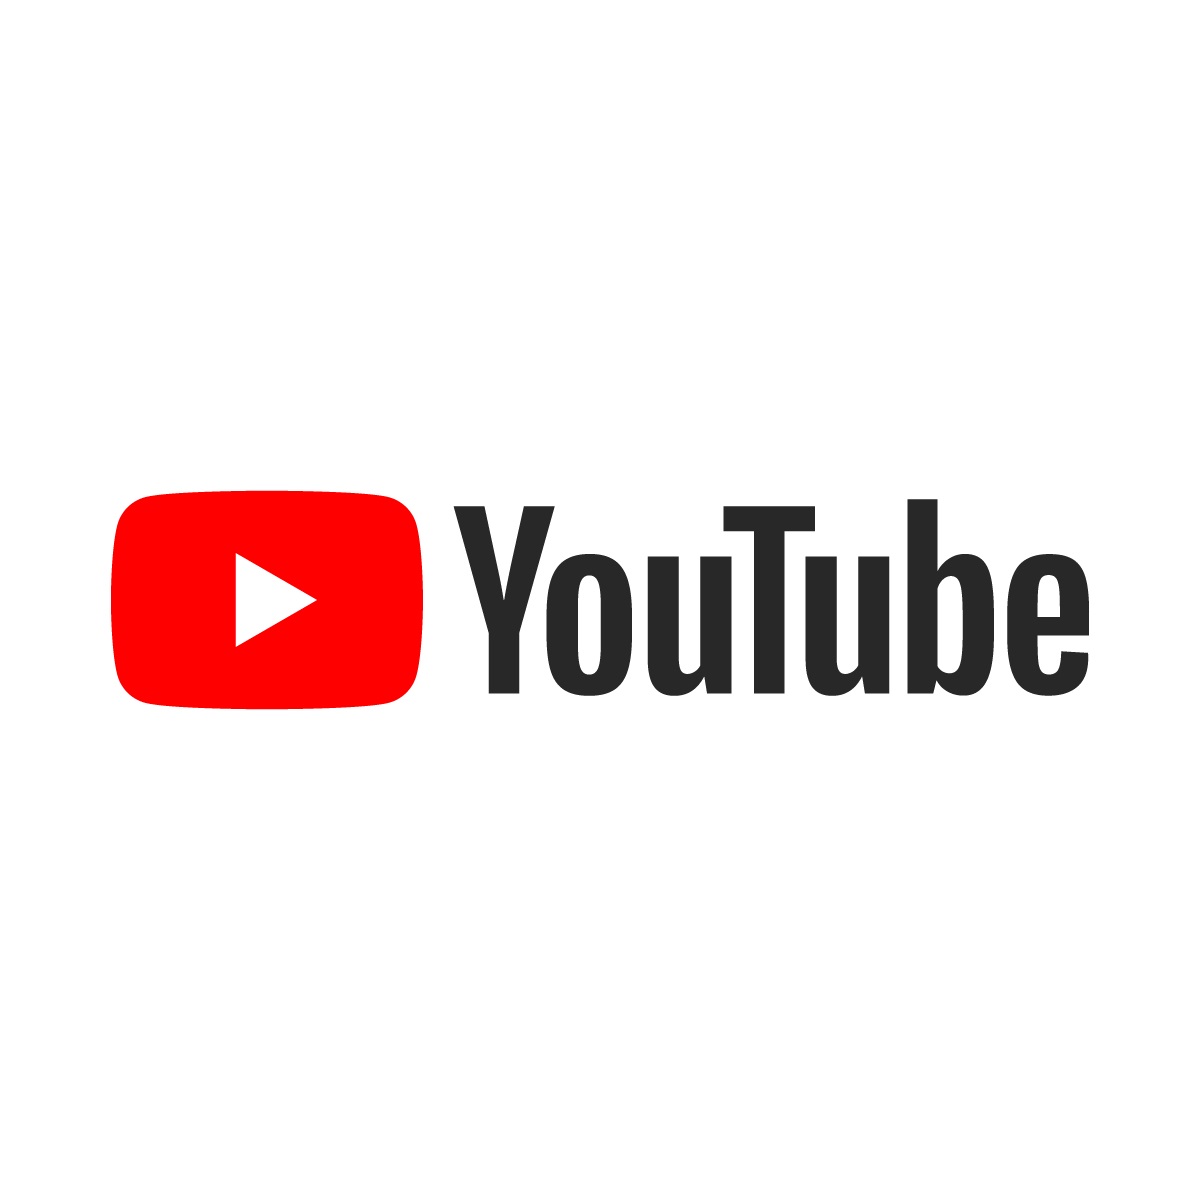  9MovieRulz-YouTube  